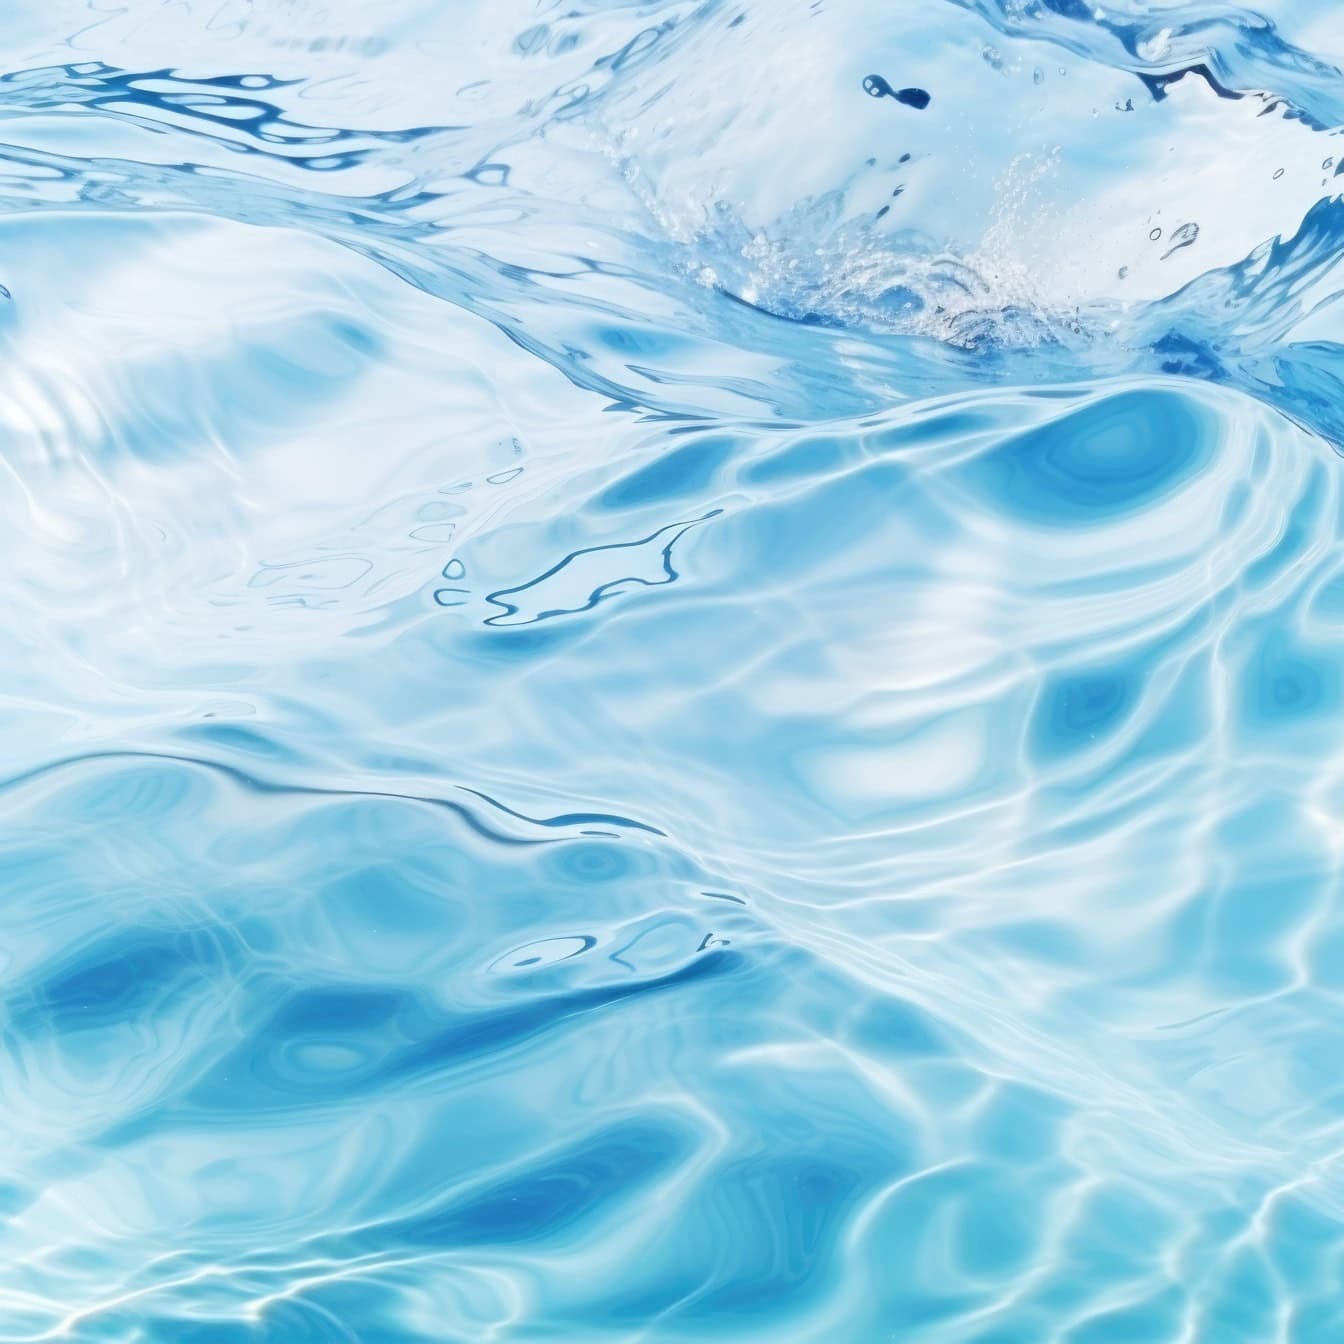 Superficie turchese semitrasparente dell’acqua con onde che schizzano, illustrazione del movimento del fluido